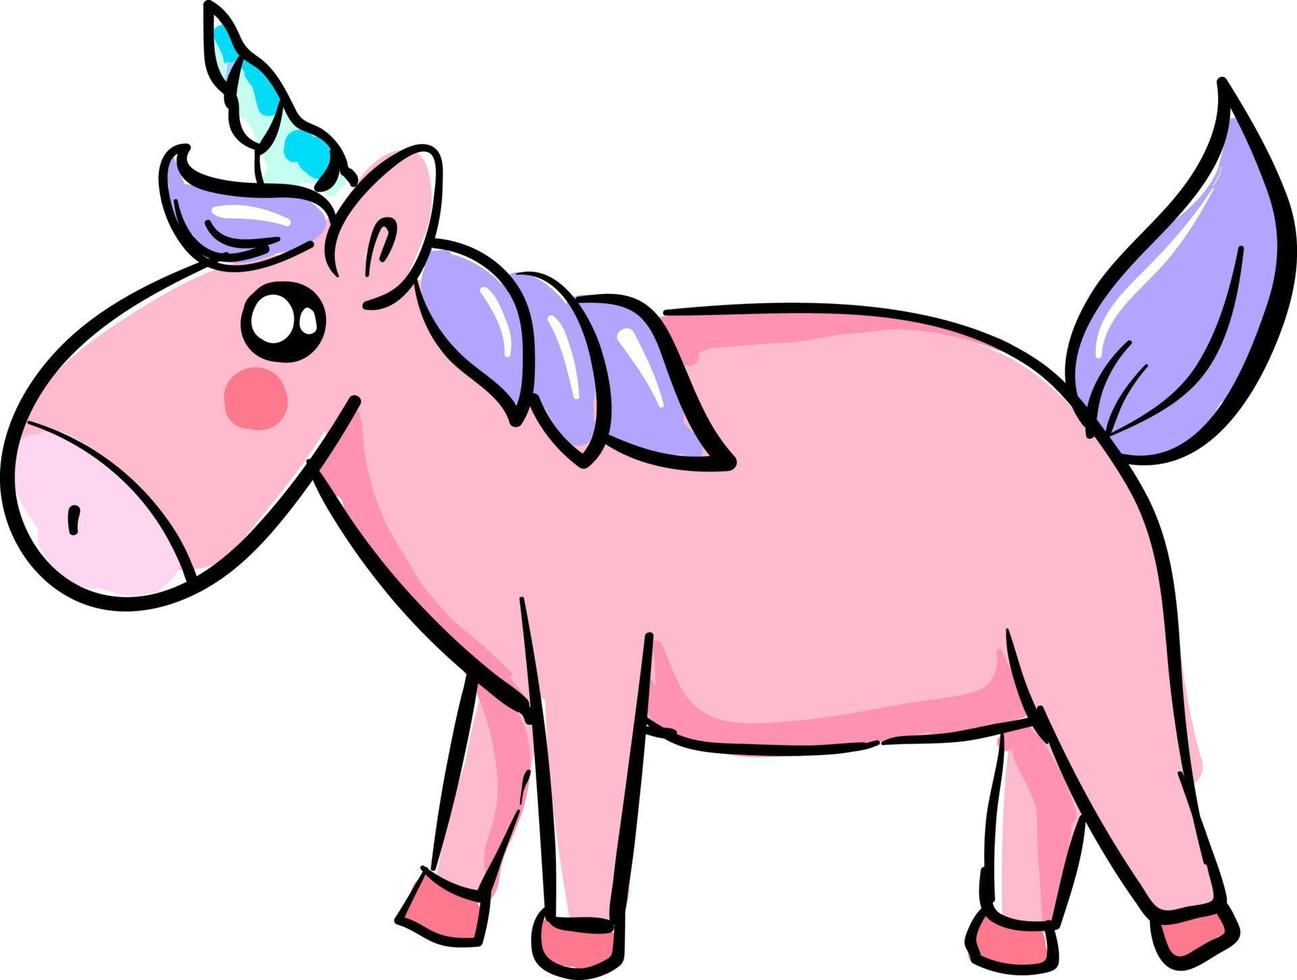 Unicornio rosa, ilustración, vector sobre fondo blanco.